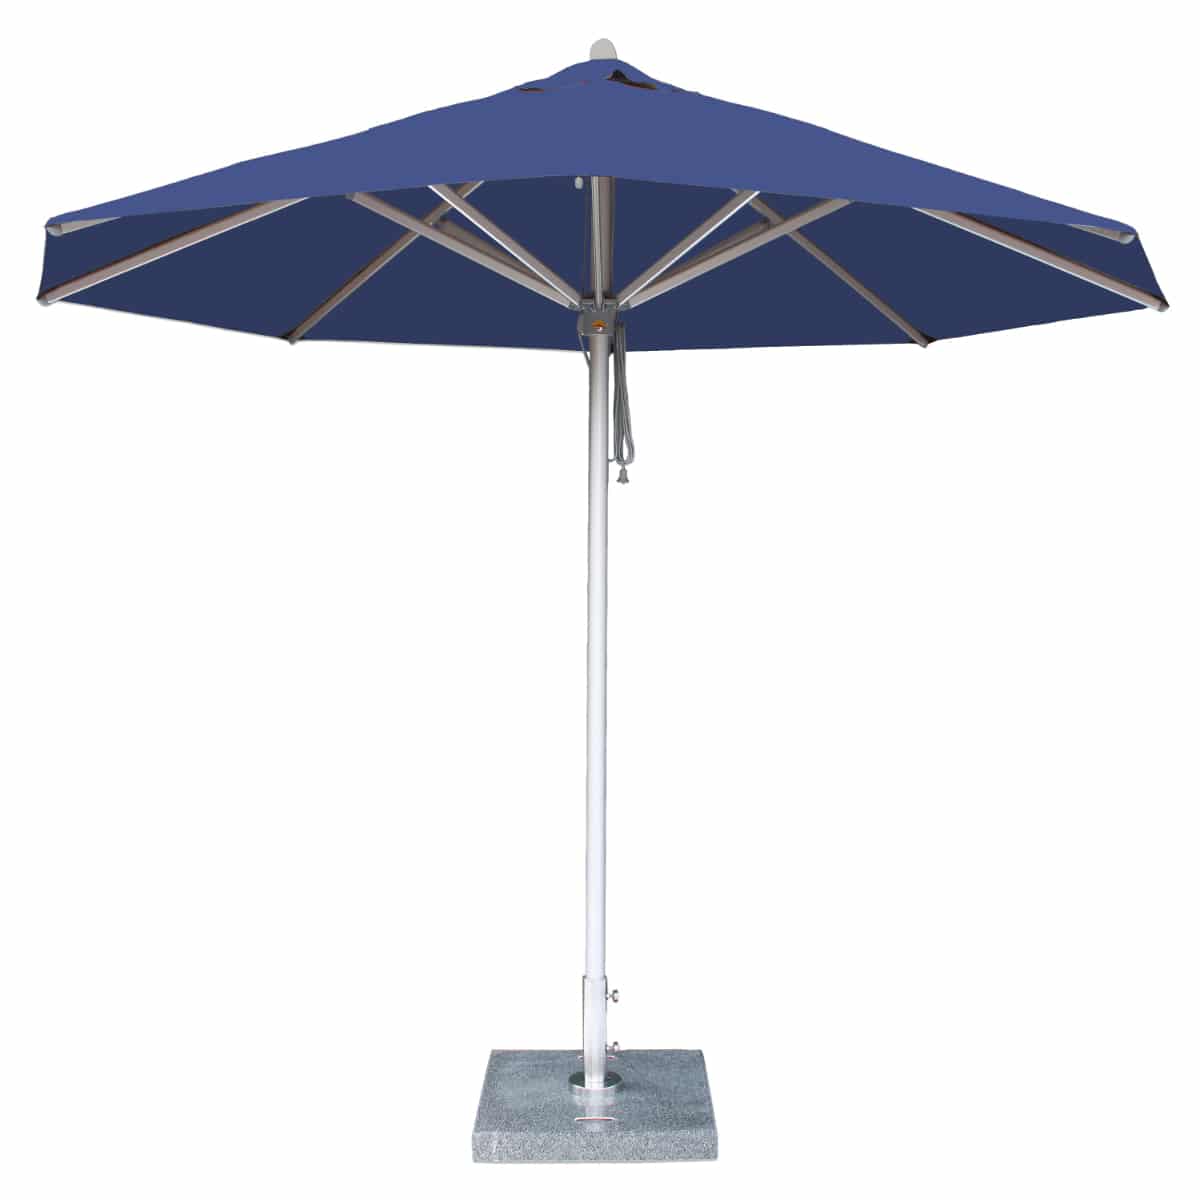 Ultimate Patio Umbrellas Ing Guide, Treasure Garden Umbrella Maintenance